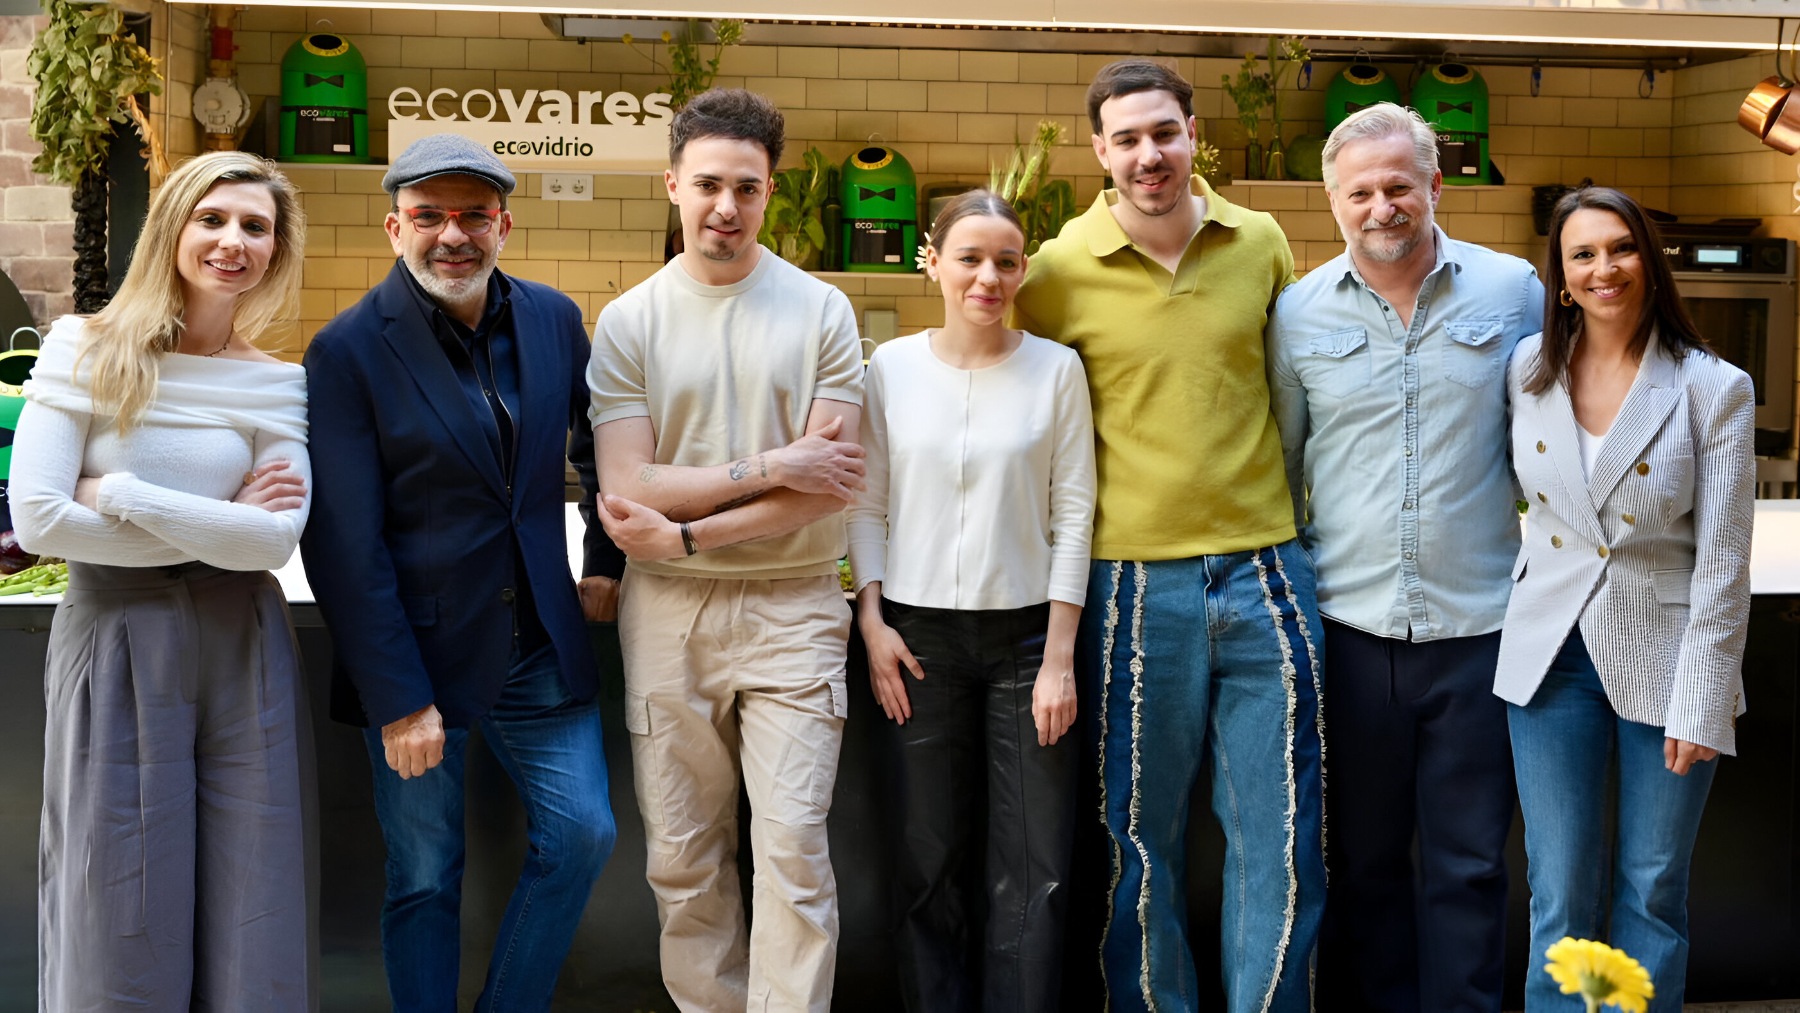 Los participantes en el encuentro EcoVares by Ecovidrio, entre los que intervinieron cinco chefs con Estrellas Michelin